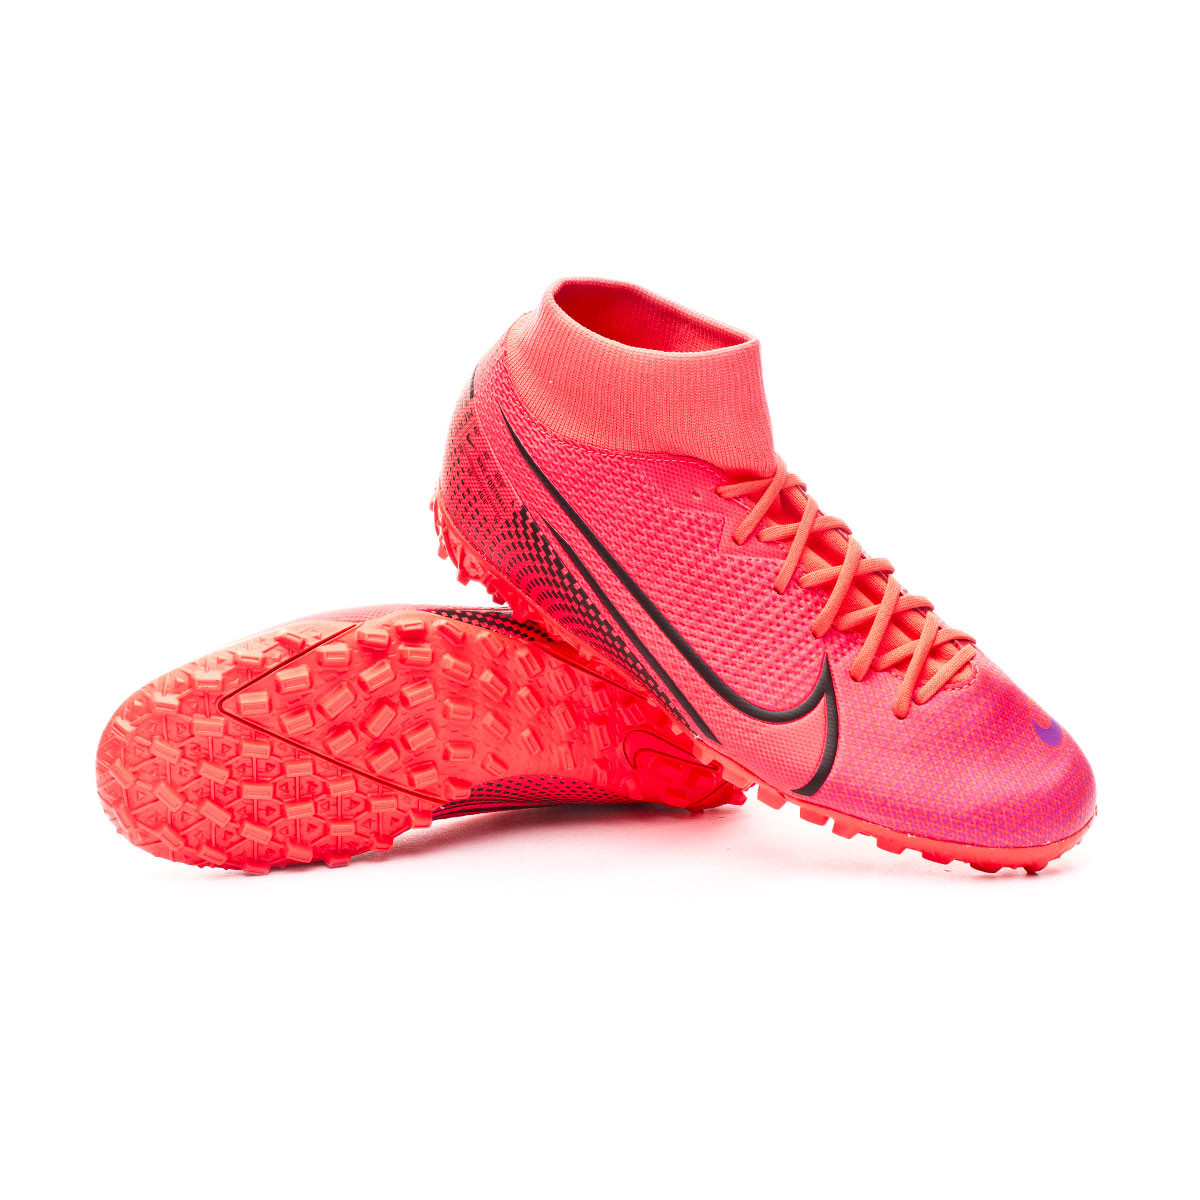 Zapatilla Nike Mercurial Superfly VII Academy Turf Laser crimson-Black -  Tienda de fútbol Fútbol Emotion